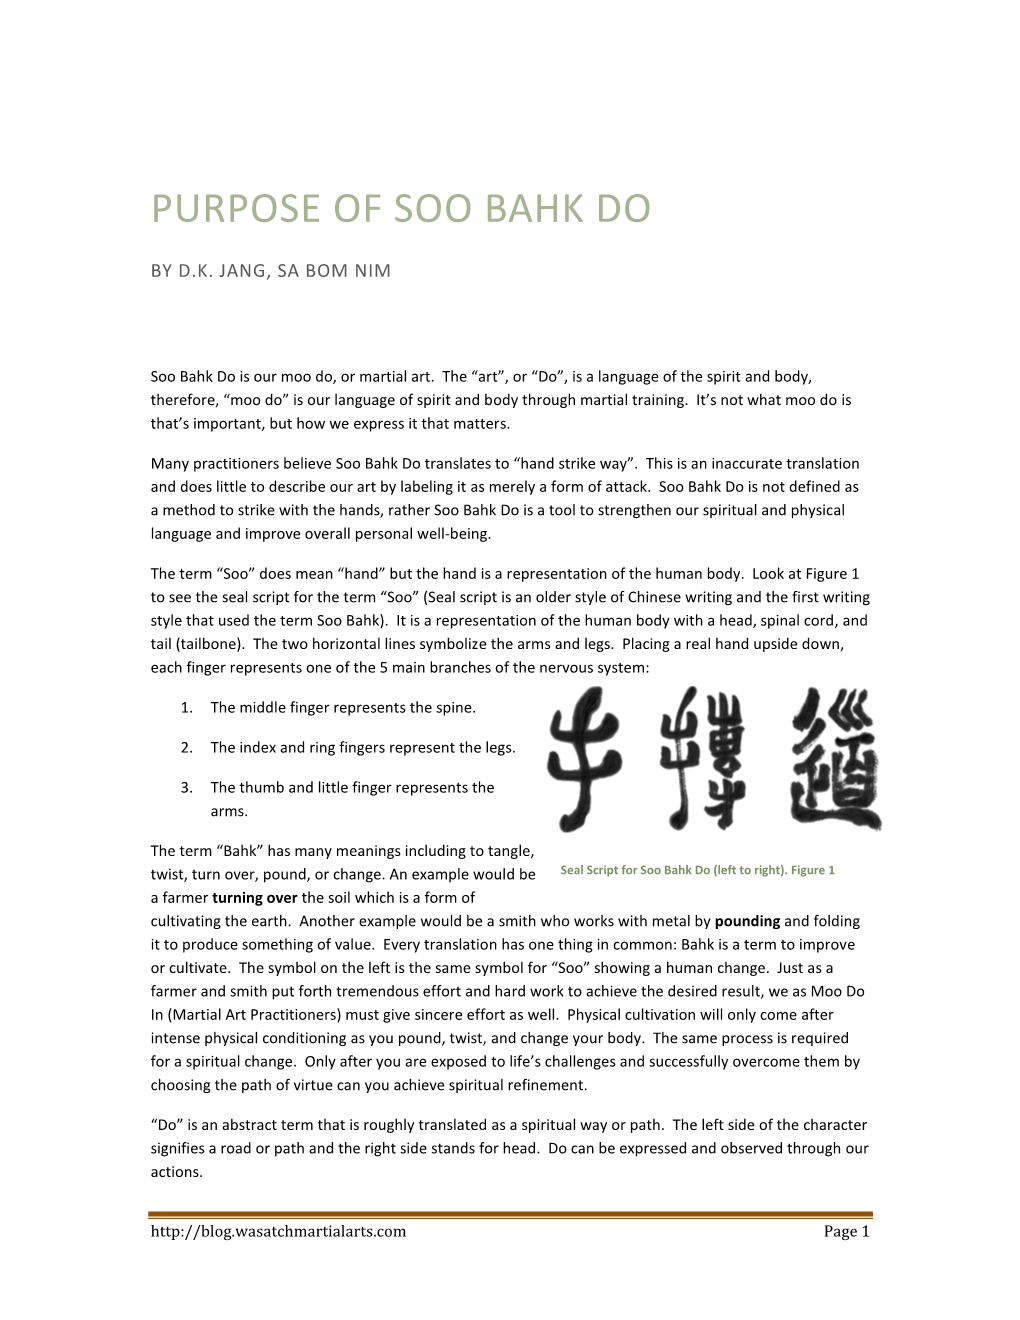 Purpose of Soo Bahk Do